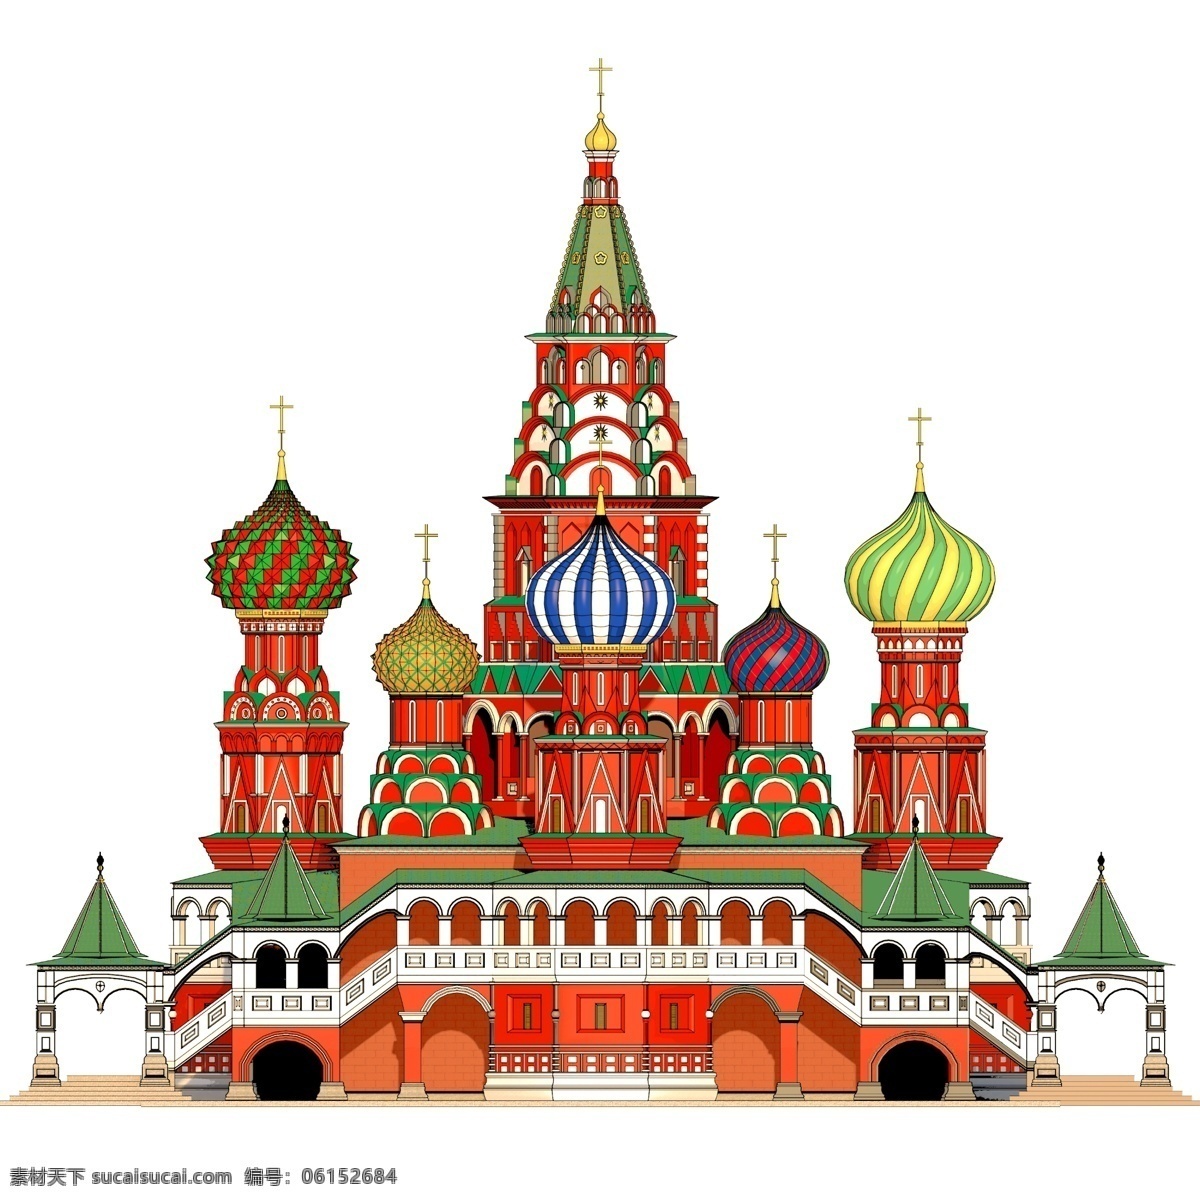 手绘 俄罗斯 教堂 建筑 俄罗斯风格 俄罗斯建筑 俄罗斯特色 手绘建筑 手绘教堂 东正教